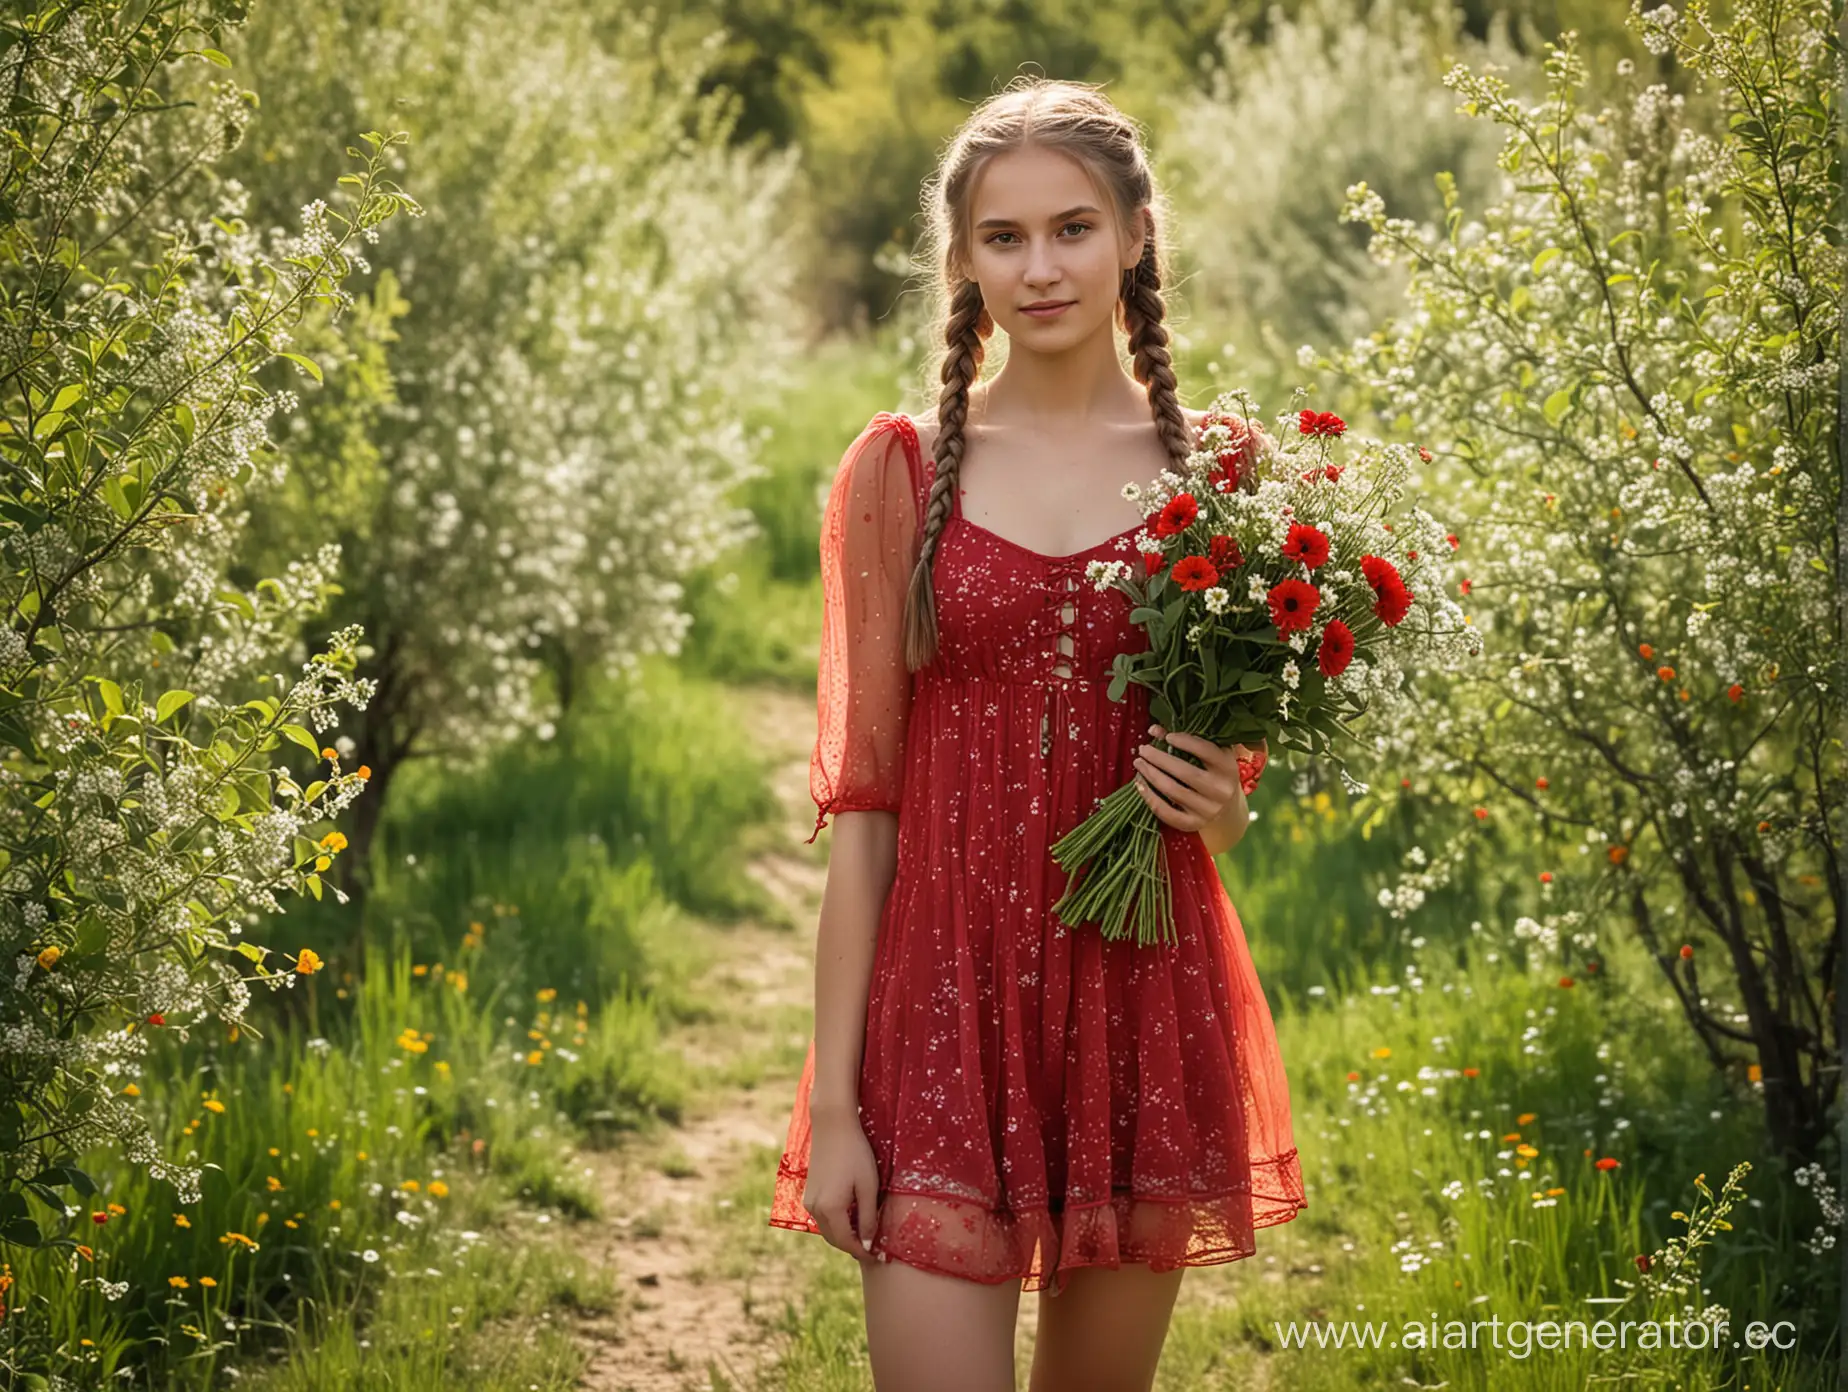 Русская молодая сельская девушка в фруктовом саду, красный полупрозрачный сарафан ультра короткий, длинные русые косы, держит букет полевых цветов 